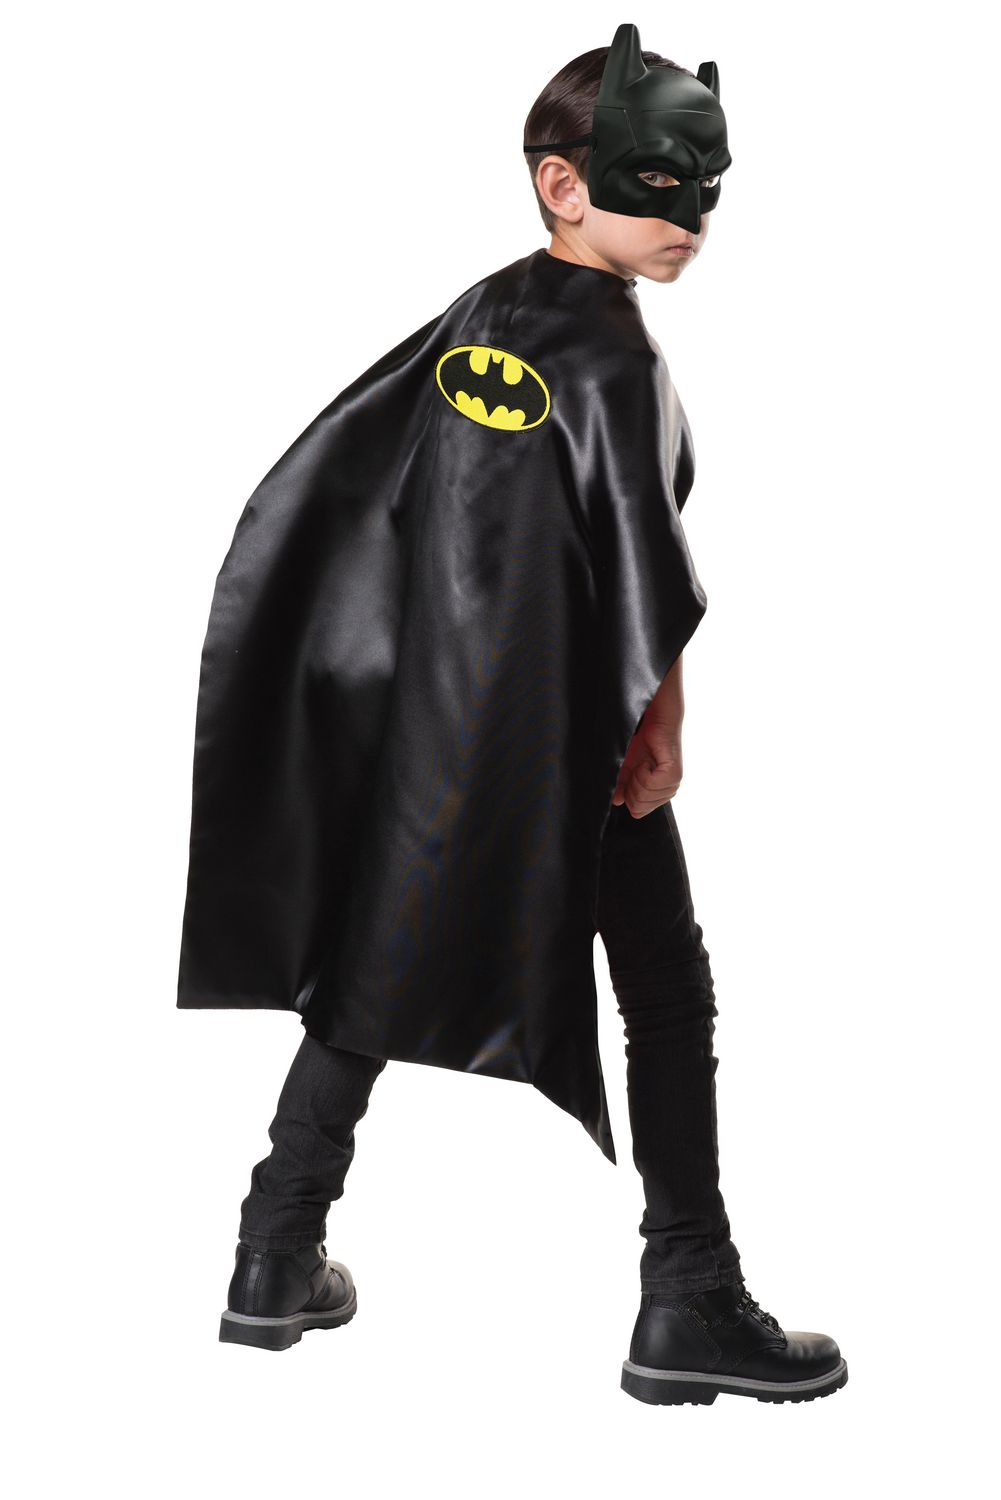 Batman cape. Карнавальный костюм Бэтмен. Костюм Бэтмена для фотошопа. Batman маска плащ. Бэтмен без маски.